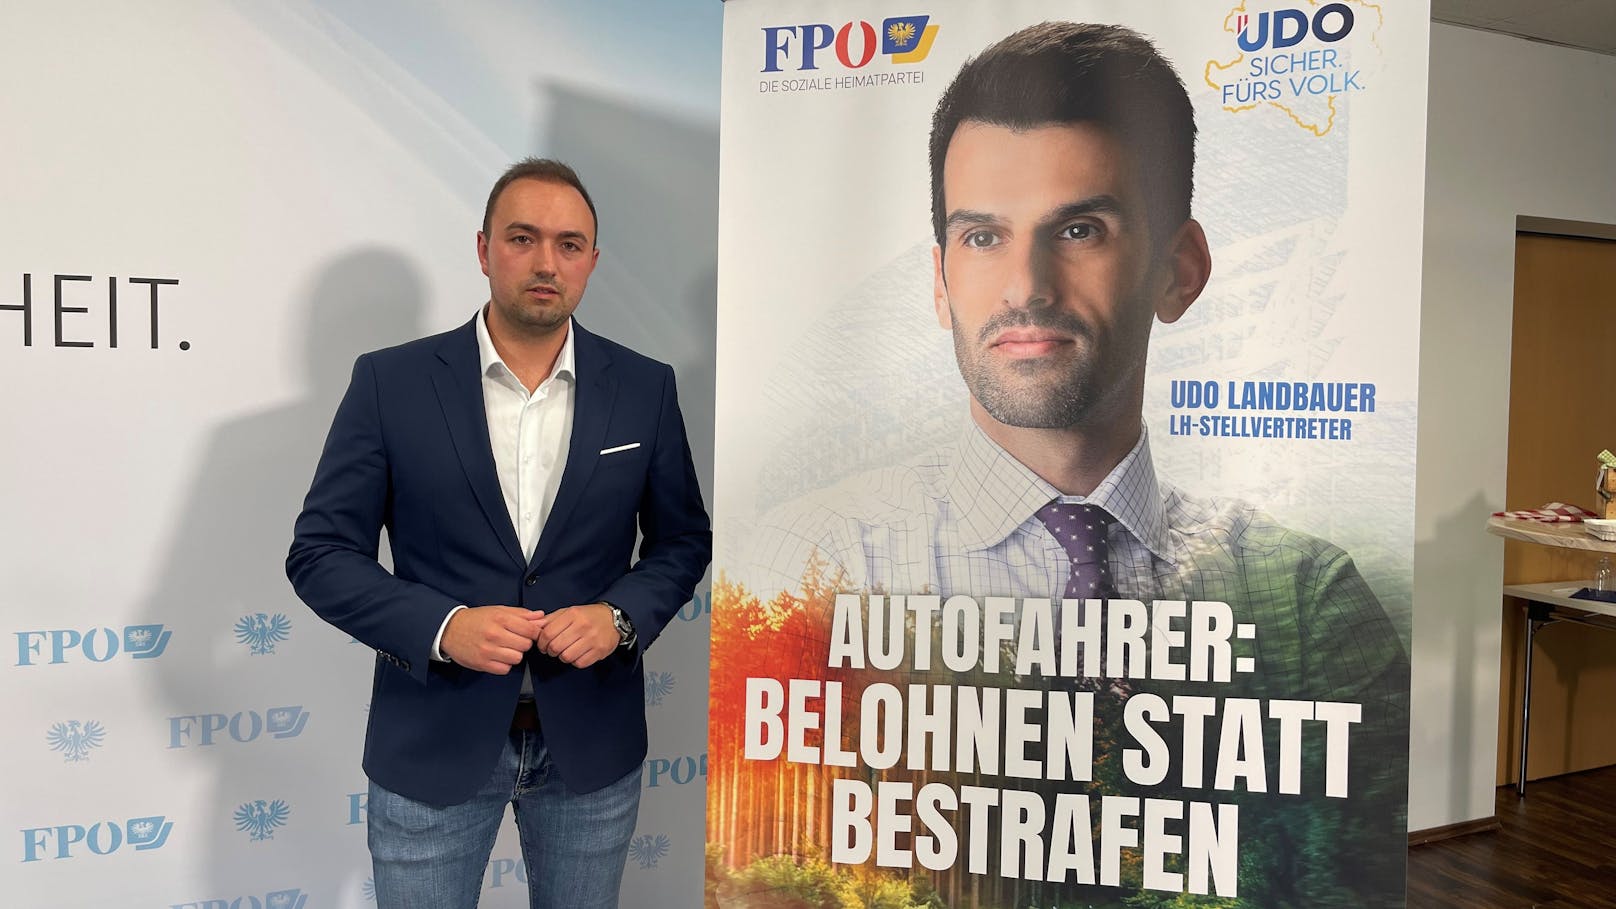 FPÖ Niederösterreich will Autofahrer "belohnen"